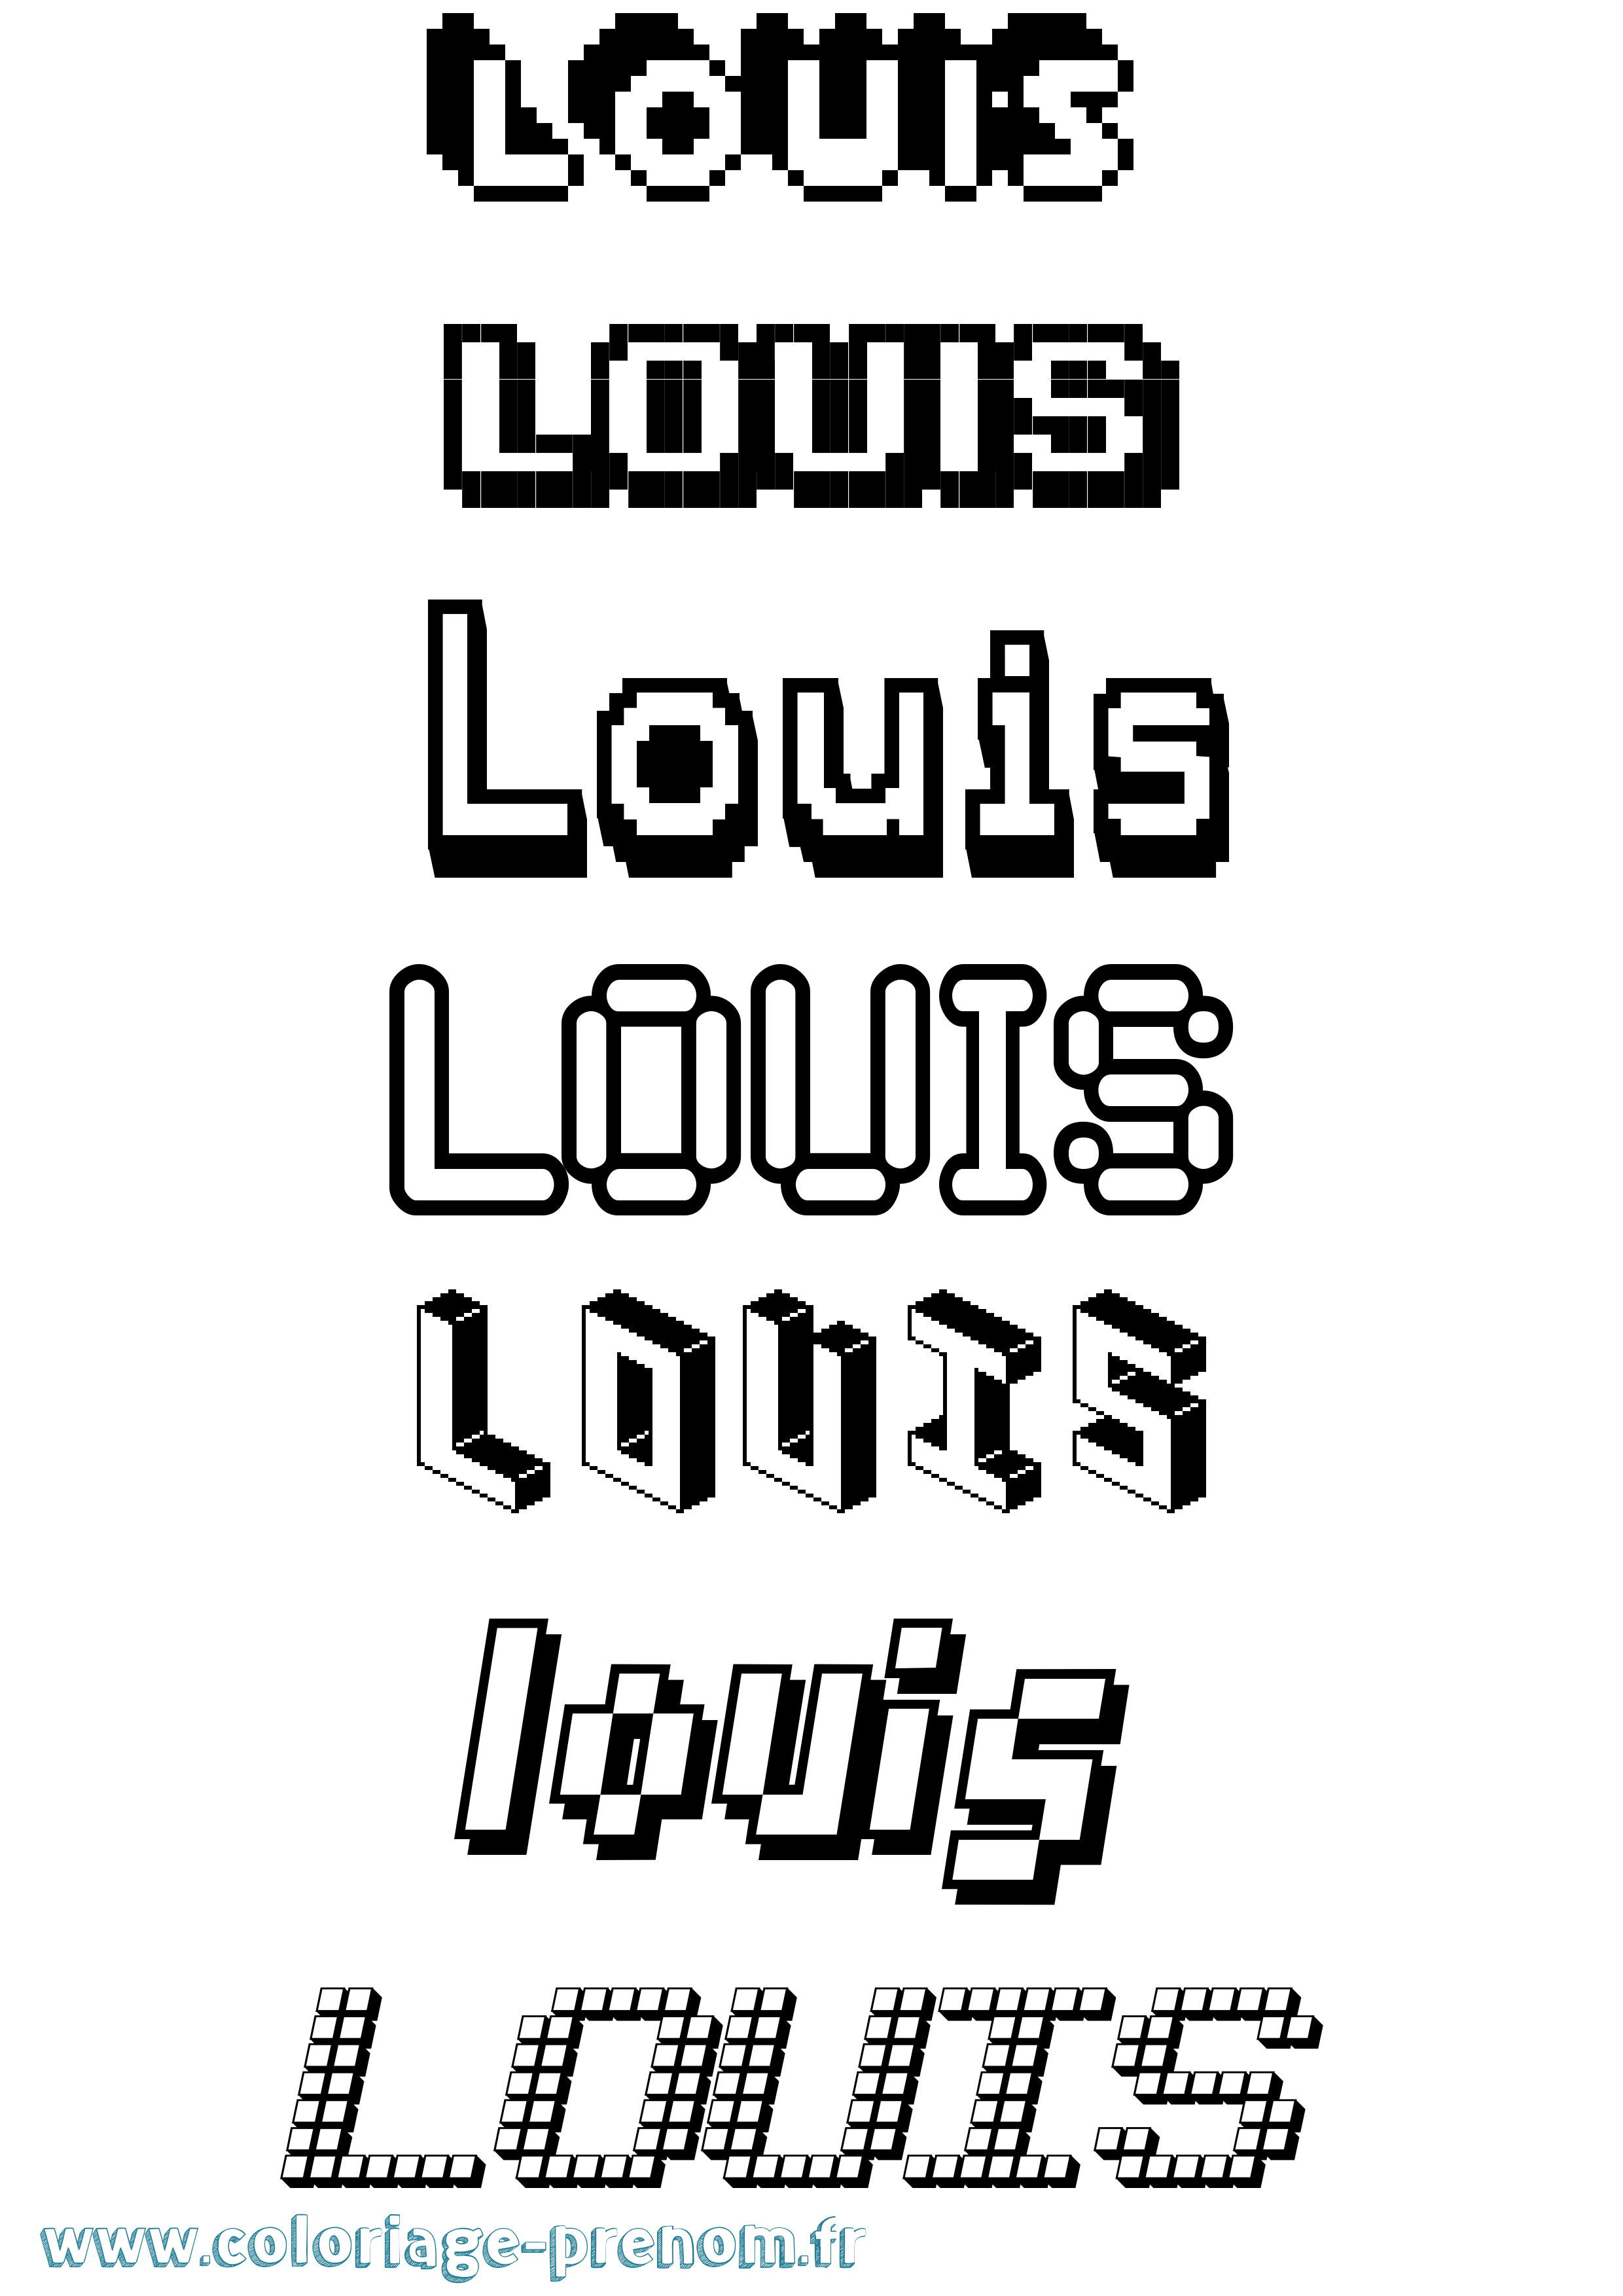 Coloriage prénom Louis